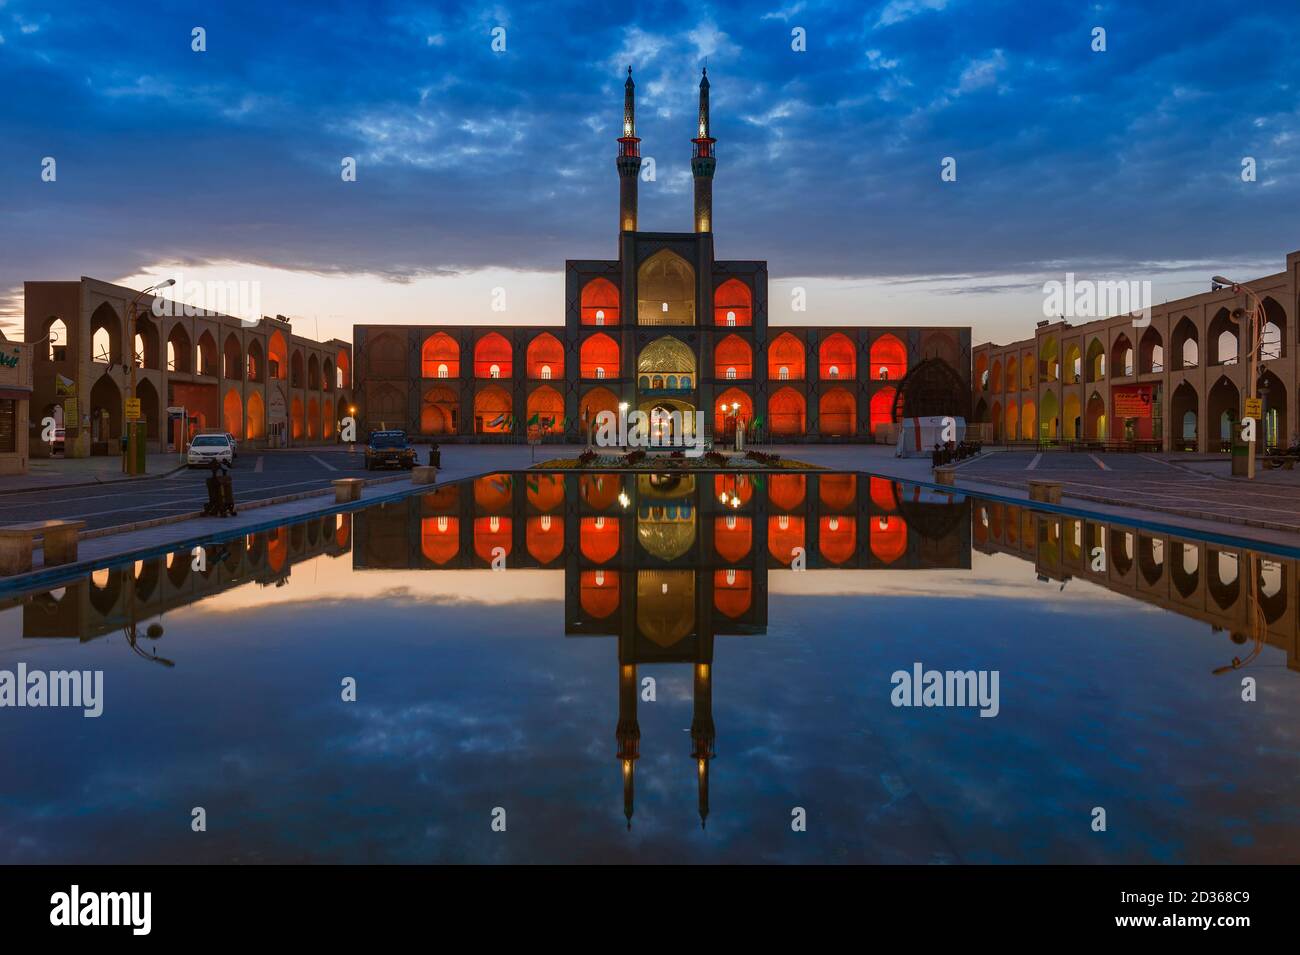 La fachada del complejo Amir Chaqmaq se ilumina al amanecer y se refleja en un estanque, Yzad, provincia de Yazd, Irán Foto de stock